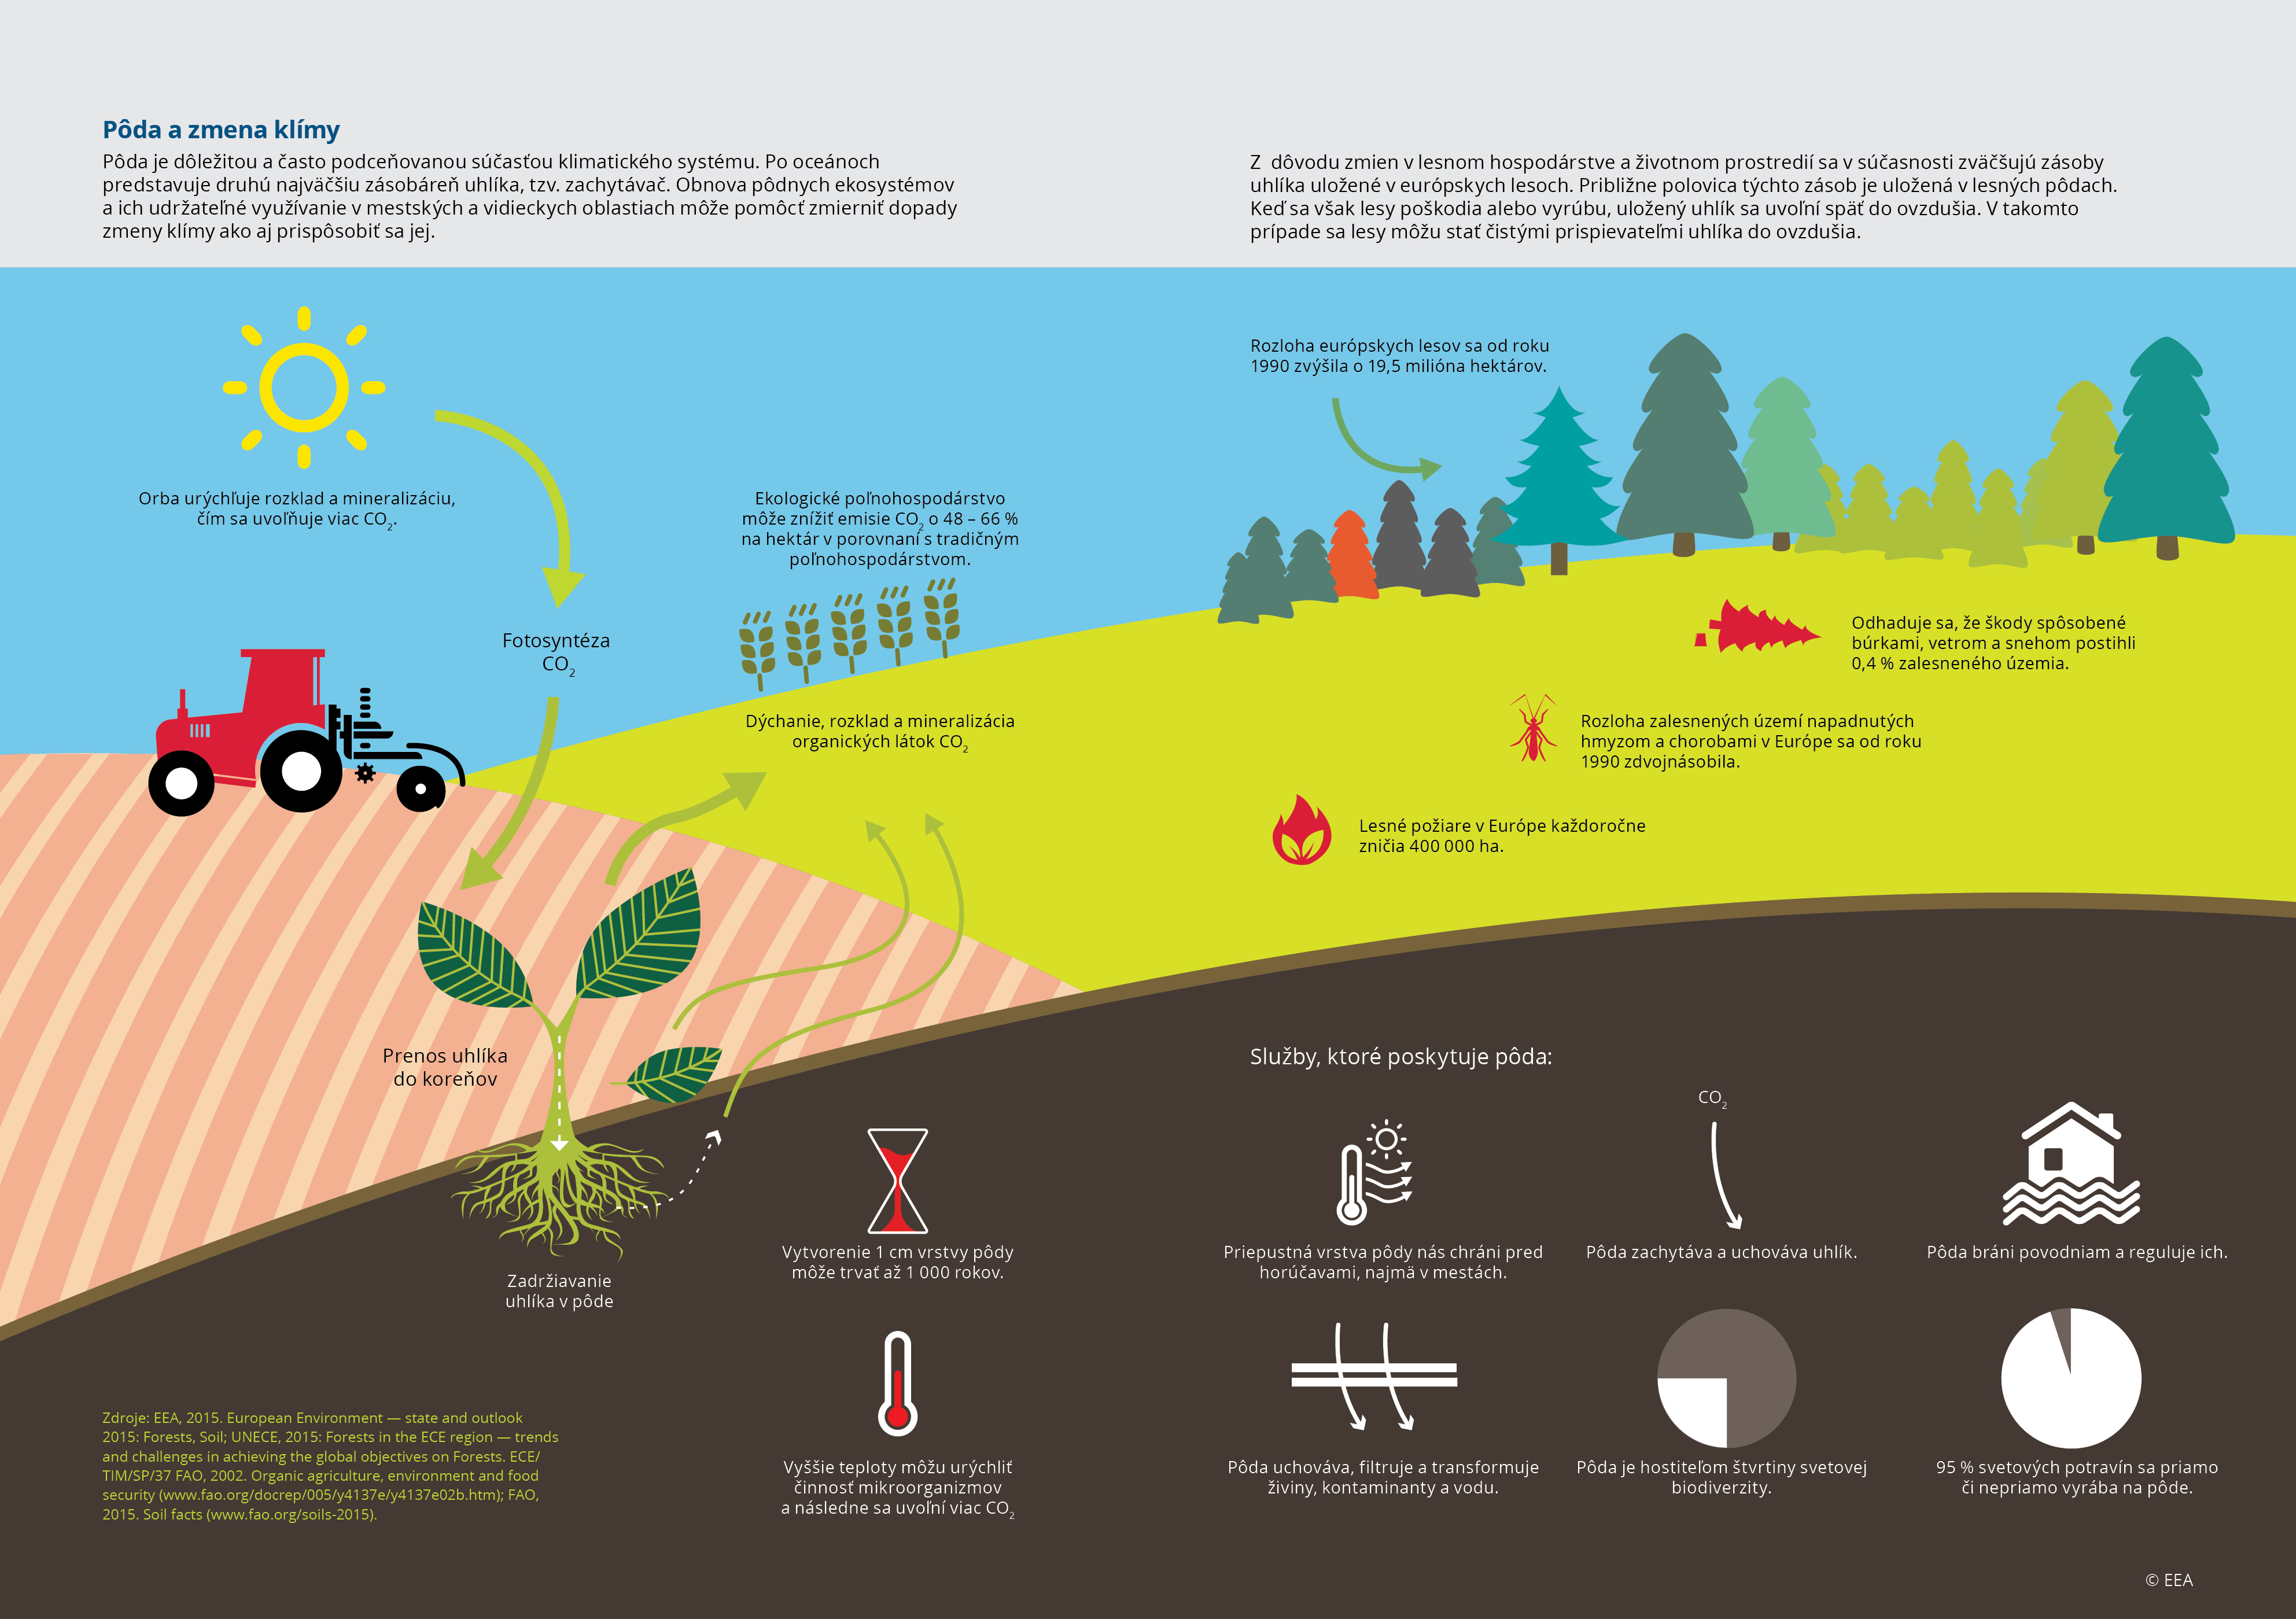 Pôda a zmena klímy